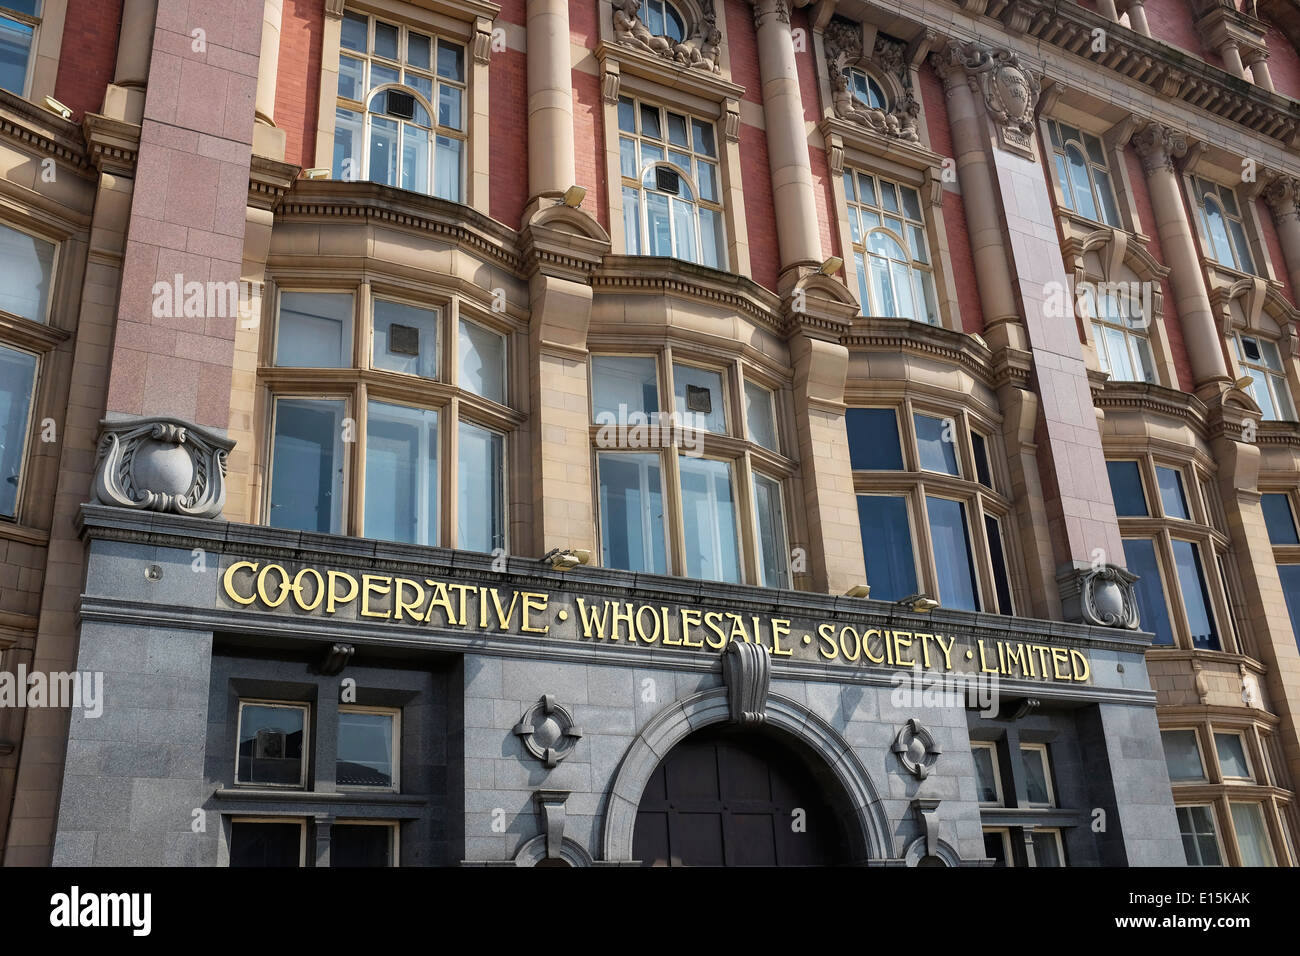 Façade d'une ancienne société Cooperative Wholesale Limited building dans le centre ville de Manchester UK Banque D'Images